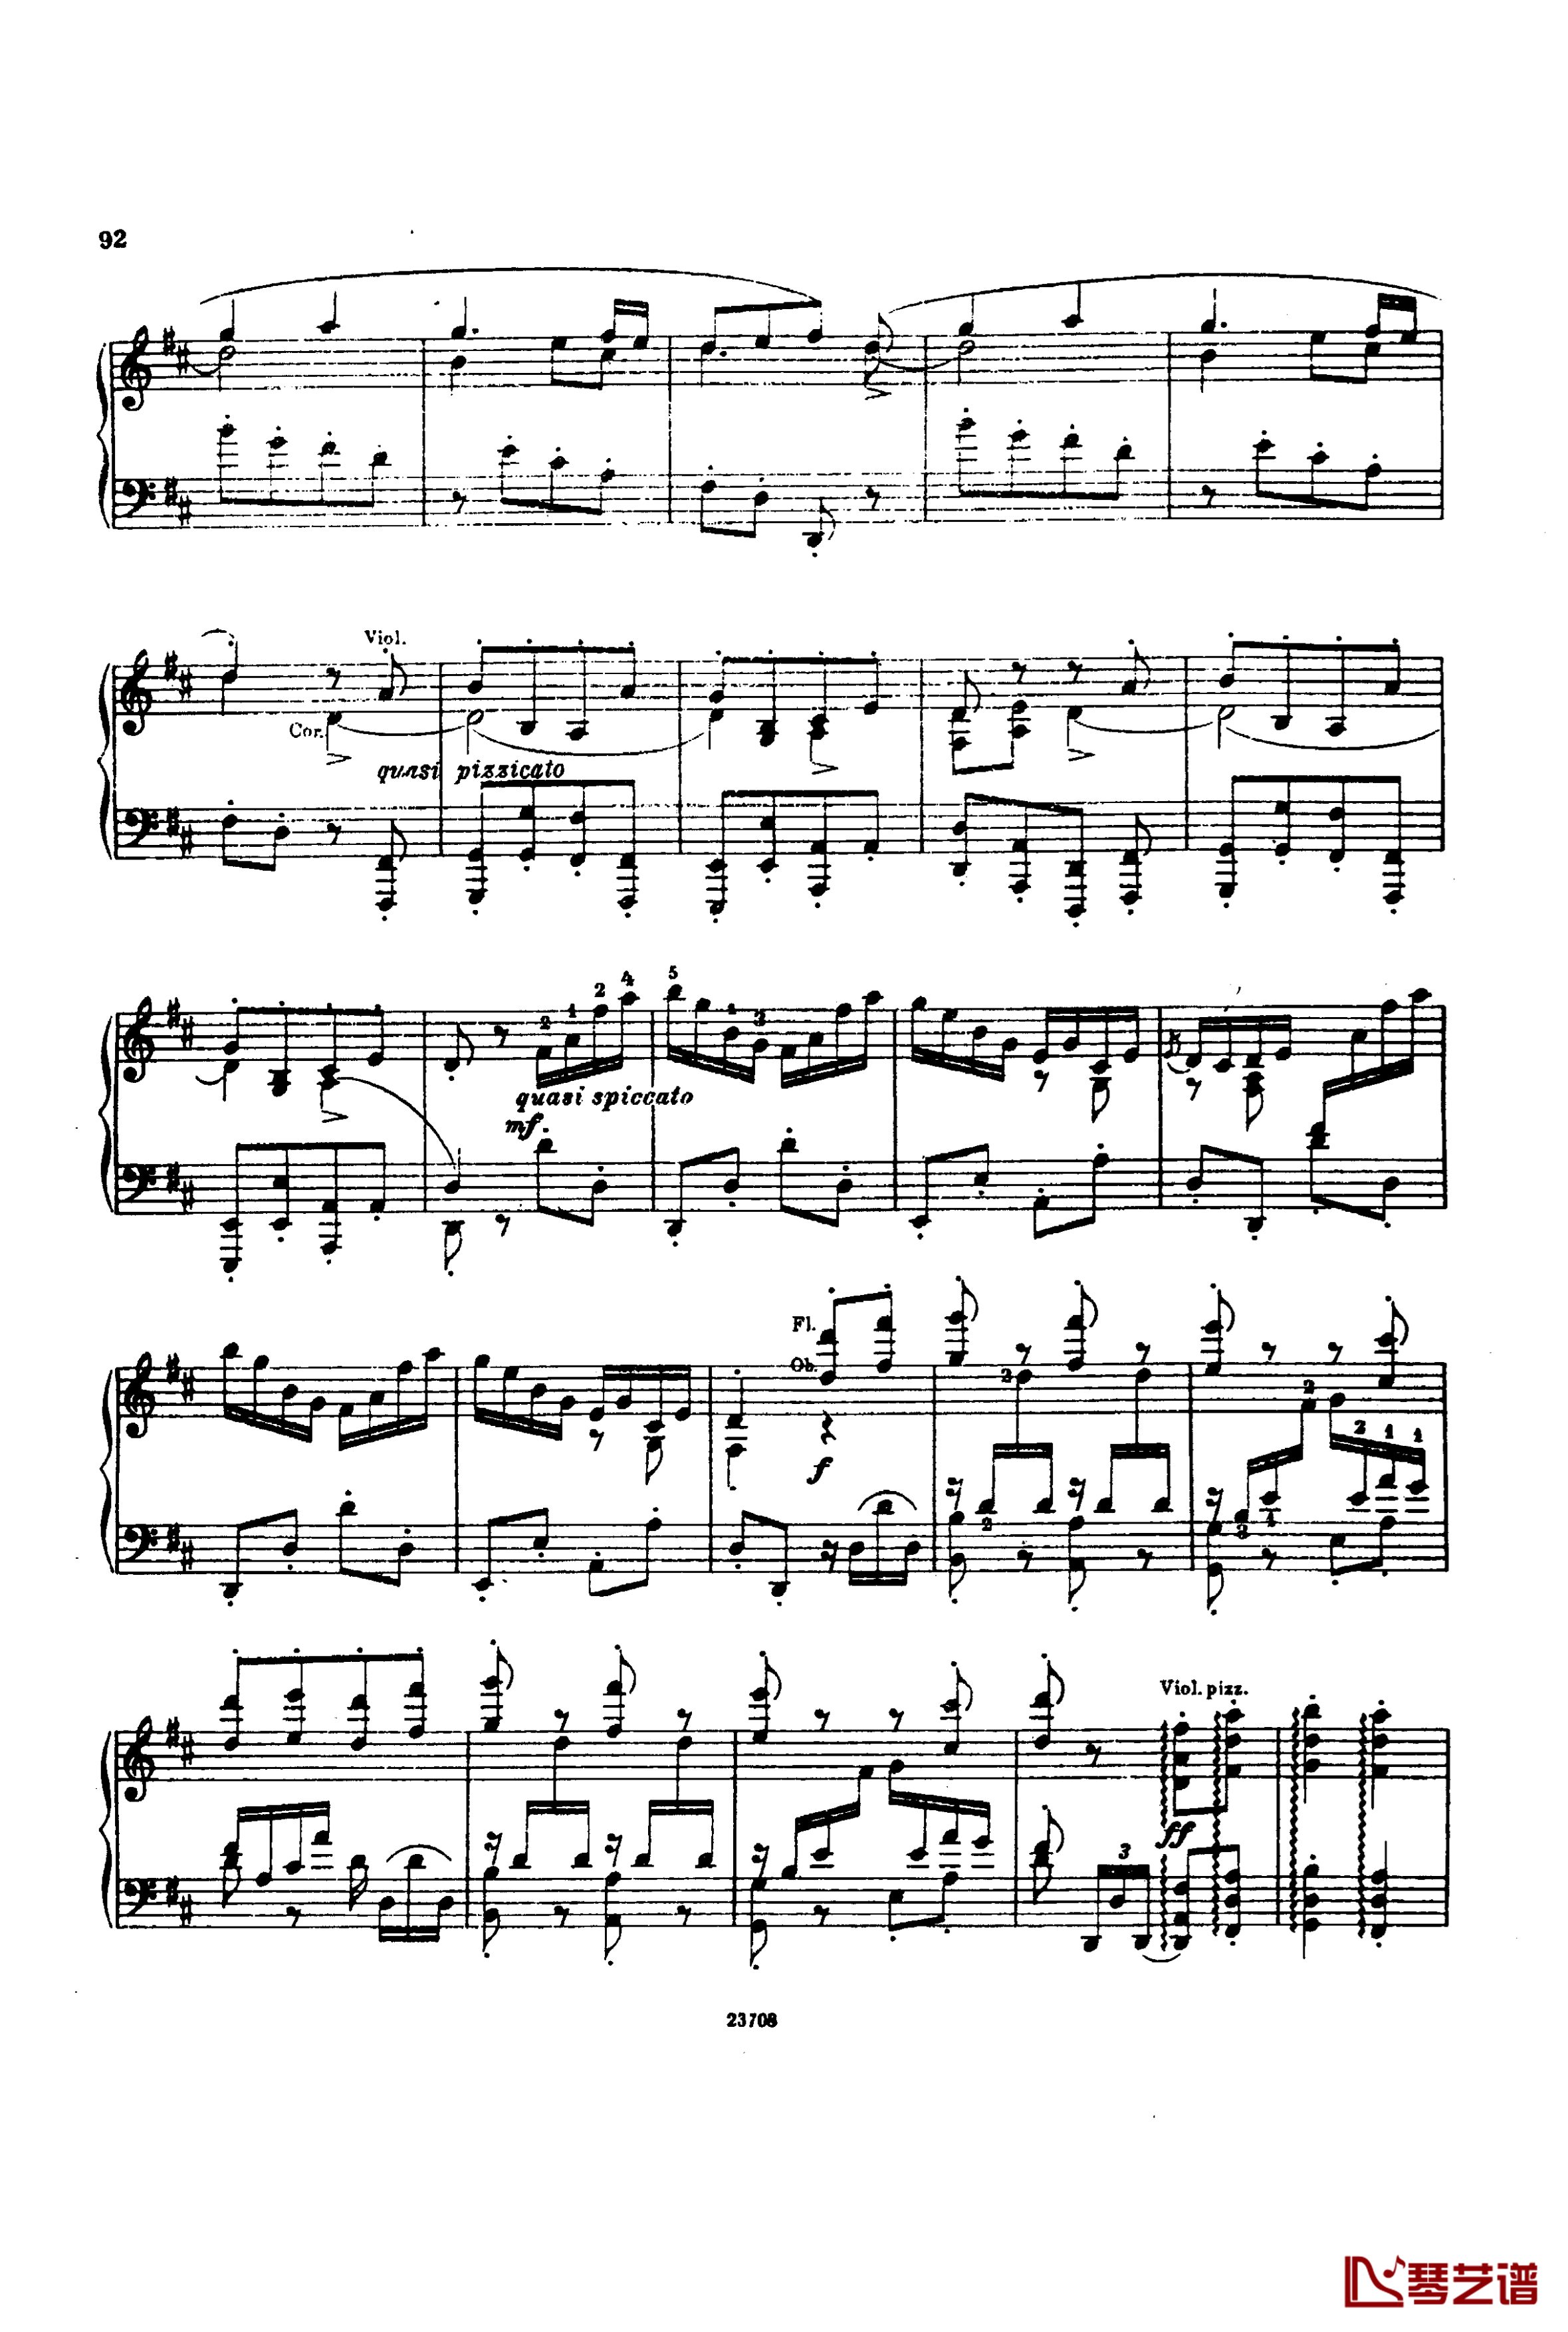 卡玛林斯卡亚幻想曲钢琴谱-格林卡6